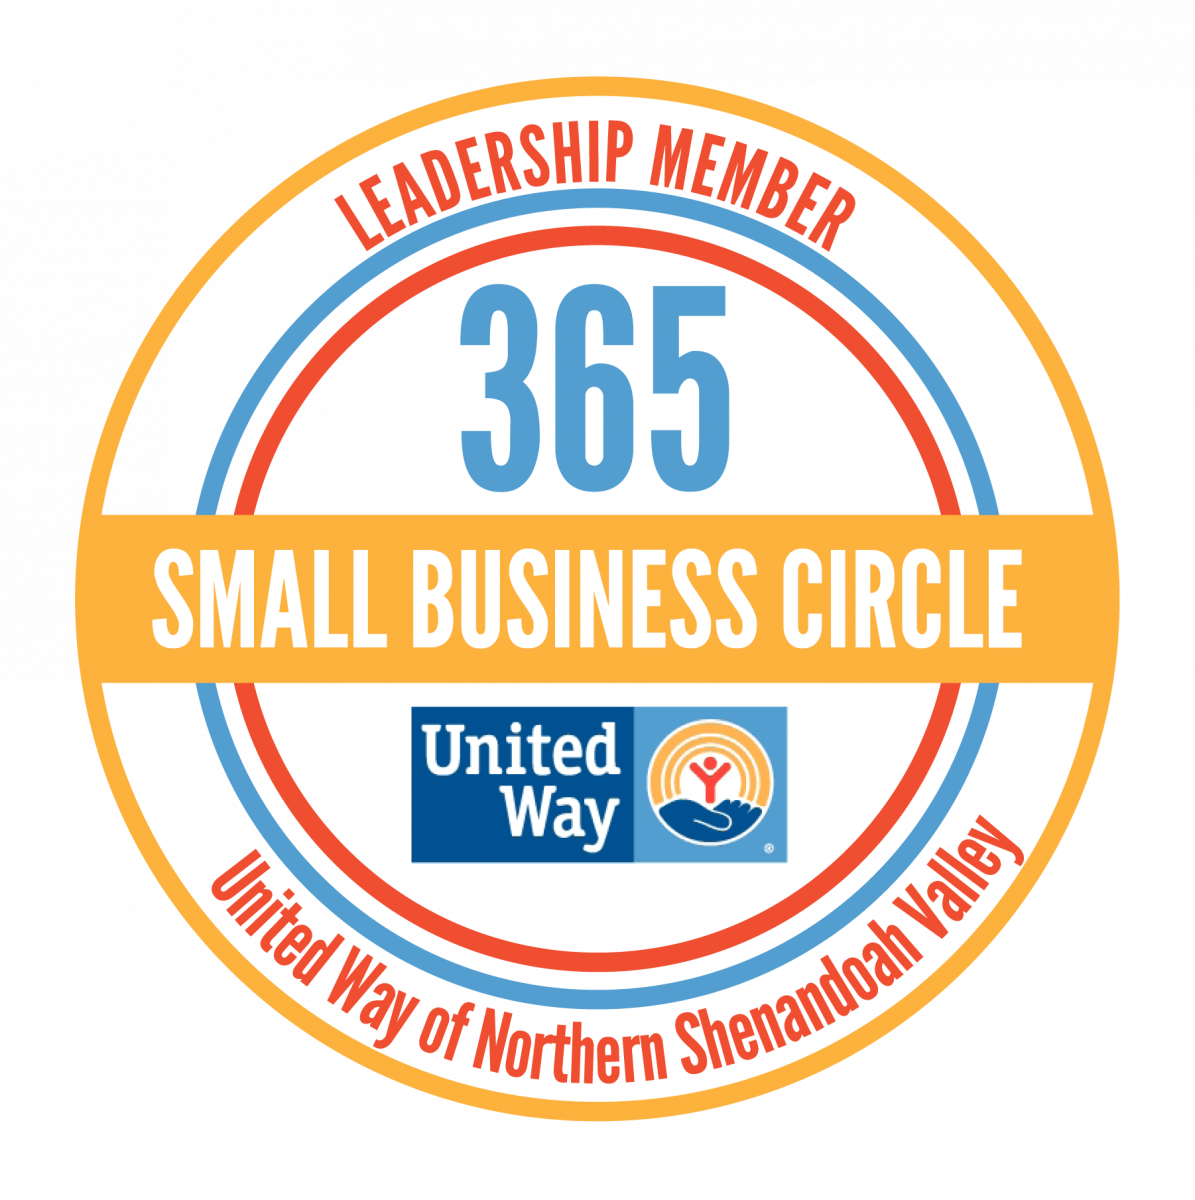 United Circle Logo - Small Business Circle. United Way of Northern Shenandoah Valley